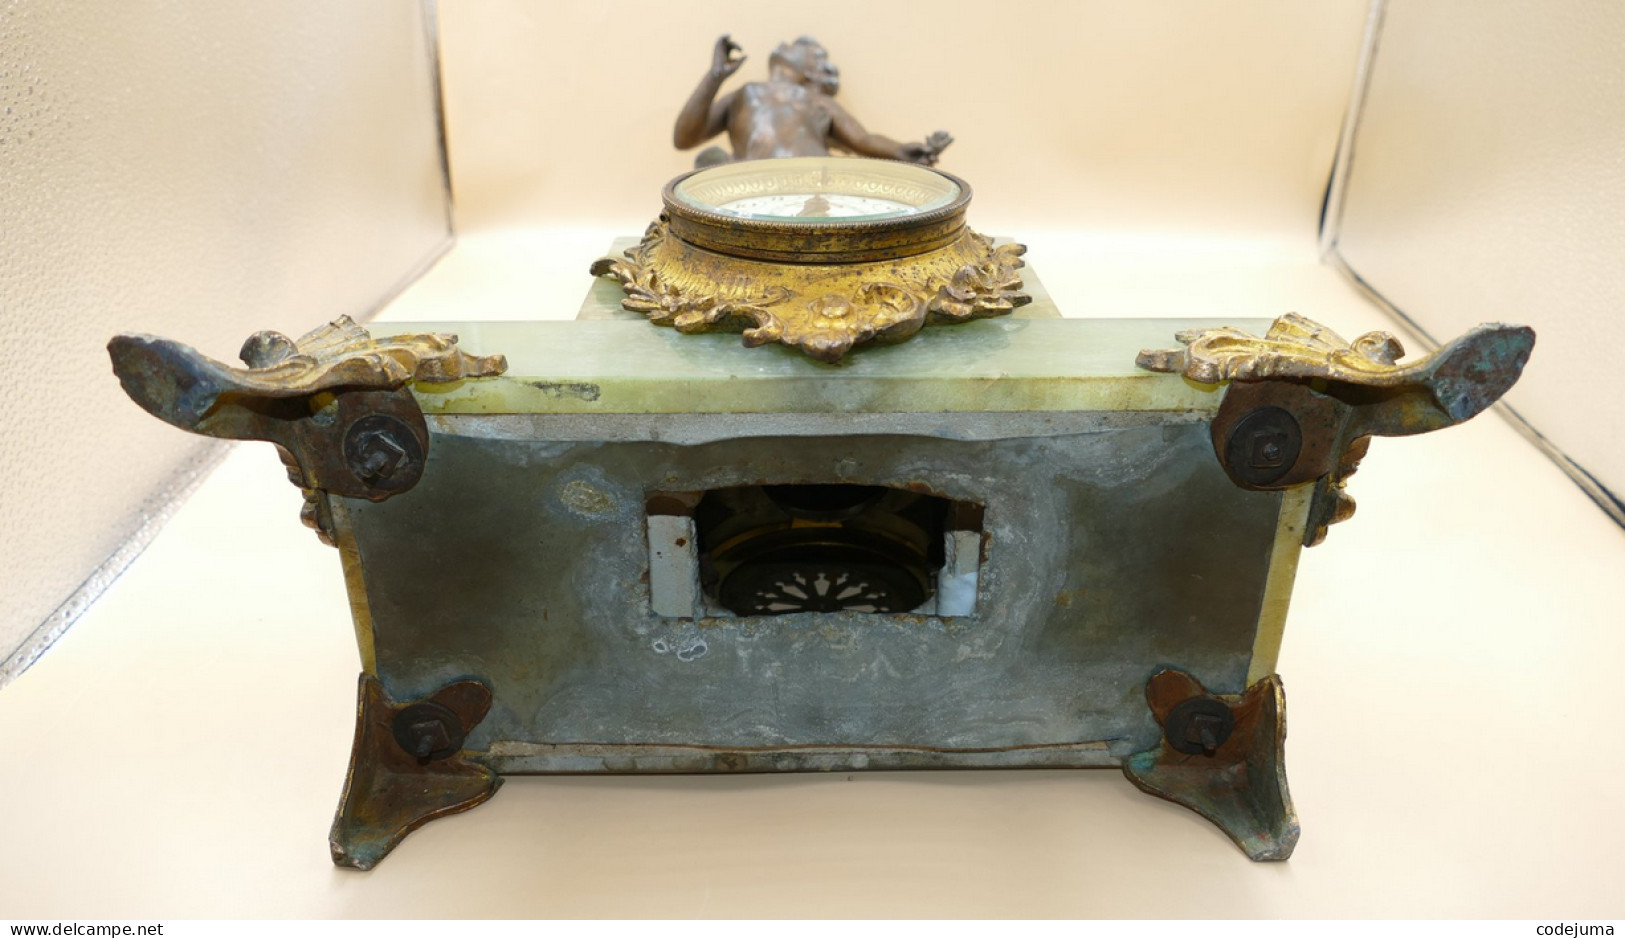 Pendule de cheminée - Onyx, Régule, "Le jour" - 1850-1900